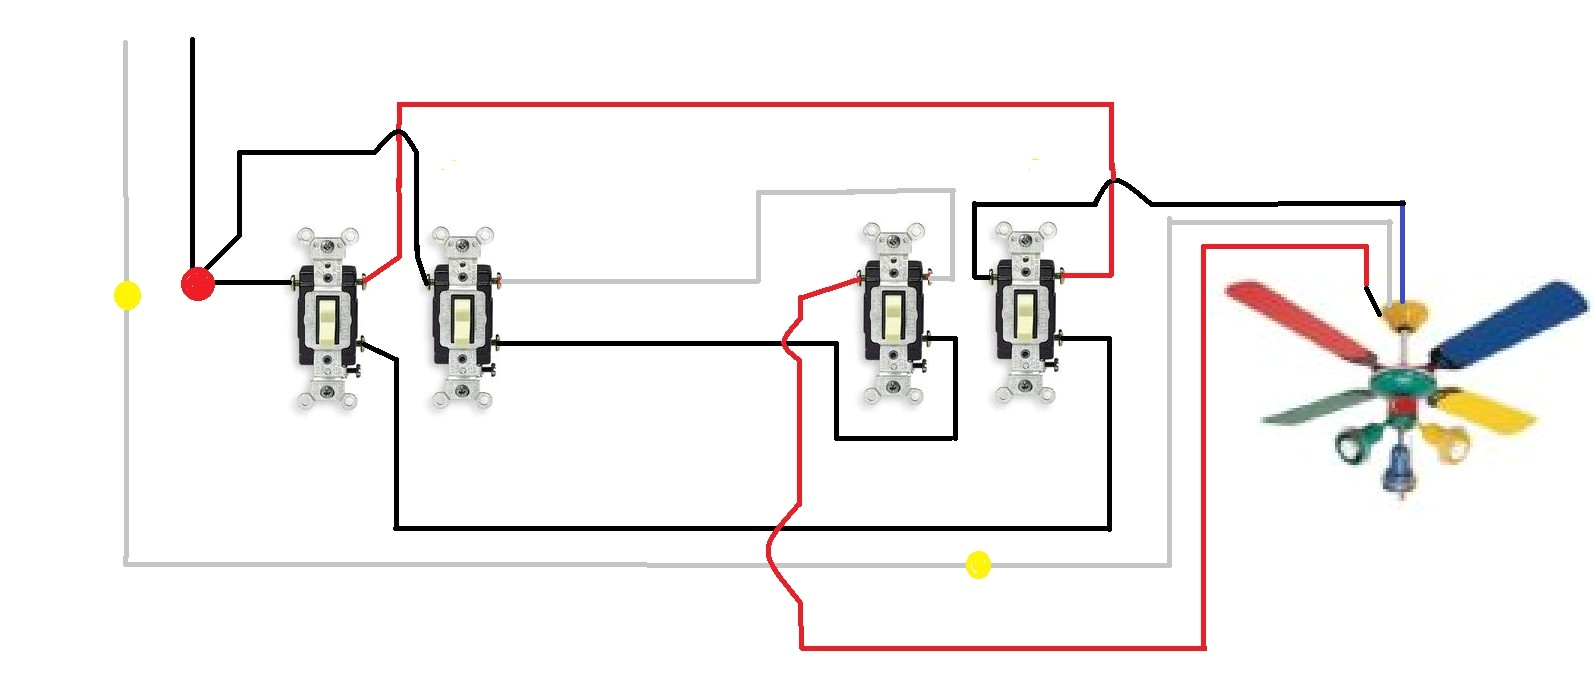 3 way switch fan light diagram wiring diagram for you westinghouse 3 way fan light switch wiring diagram westinghouse fan switch wiring diagram